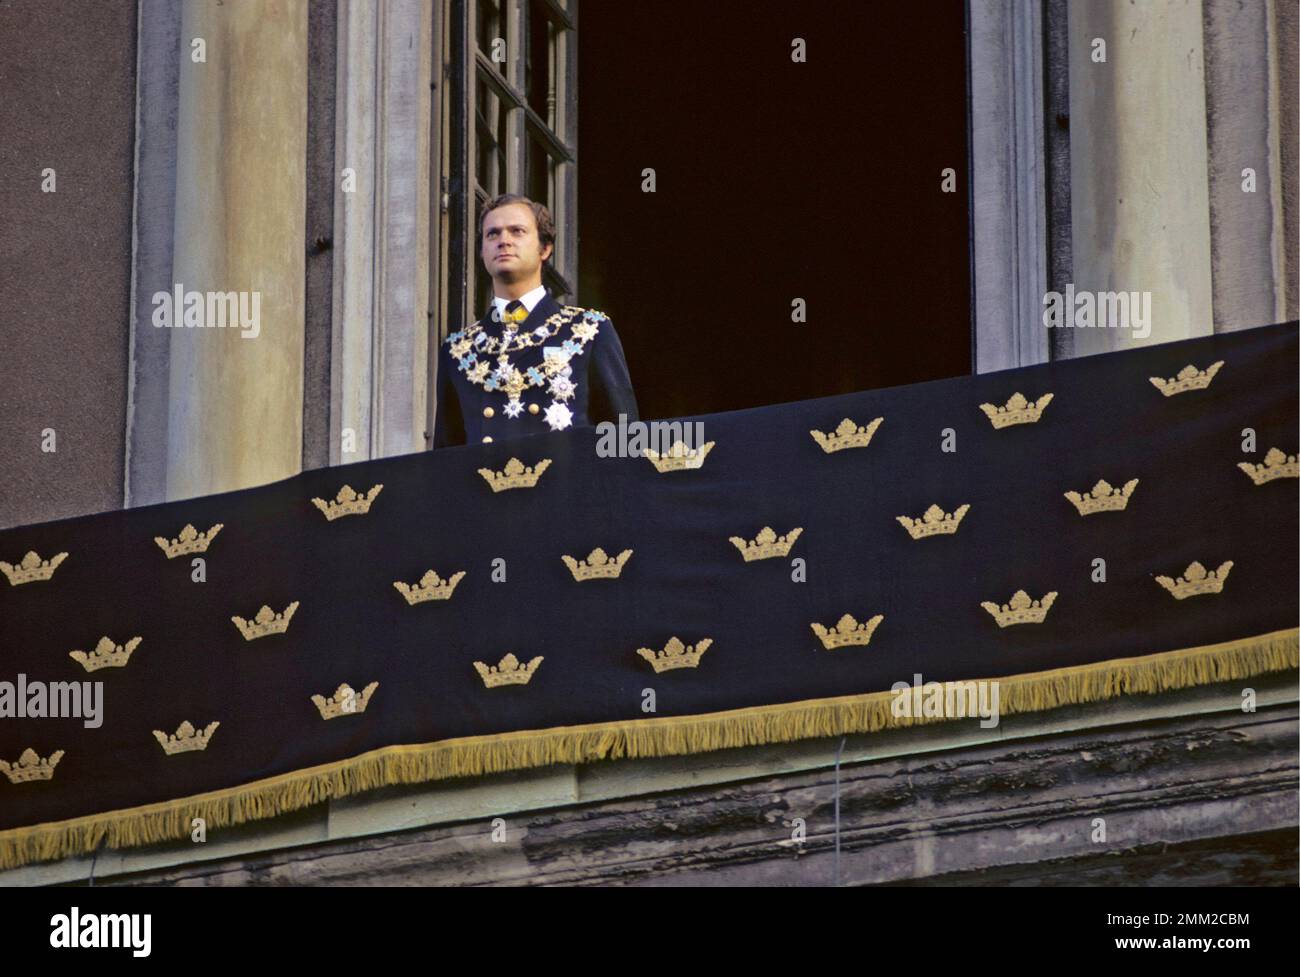 Carl XVI Gustaf, re di Svezia. Nato il 30 aprile 1946. Mercoledì 19 settembre 1973, il nuovo re giurò il giuramento reale davanti al governo nella camera del consiglio. Comparve poi davanti al Riksdag, al corpo diplomatico e alla Corte nel Rikssalen al Palazzo reale. Lì, secondo la tradizione, diede un discorso commemorativo per il monarca deceduto. Il Consiglio e la cerimonia del Rikssalen sono stati trasmessi in diretta in TV. Più di 25.000 persone si erano riunite a Norrbro per rendere omaggio e ricevere il nuovo reggente, Carl XVI Gustaf. Il re adottò "per la Svezia - nel tempo" come l'electio Foto Stock